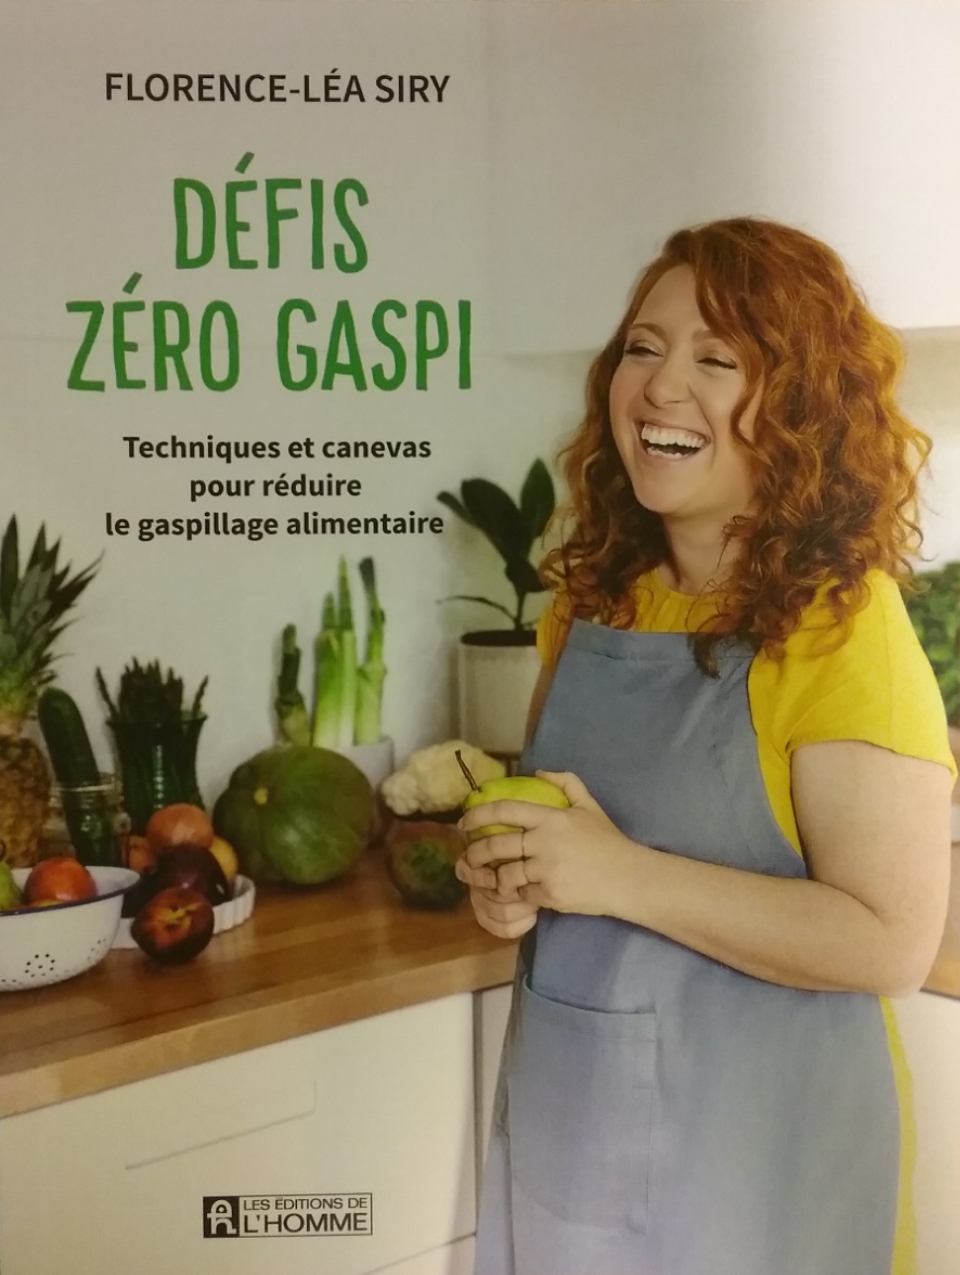 Défis zéro gaspi techniques et canevas pour réduire le gaspillage alimentaire Florence-Léa Siry